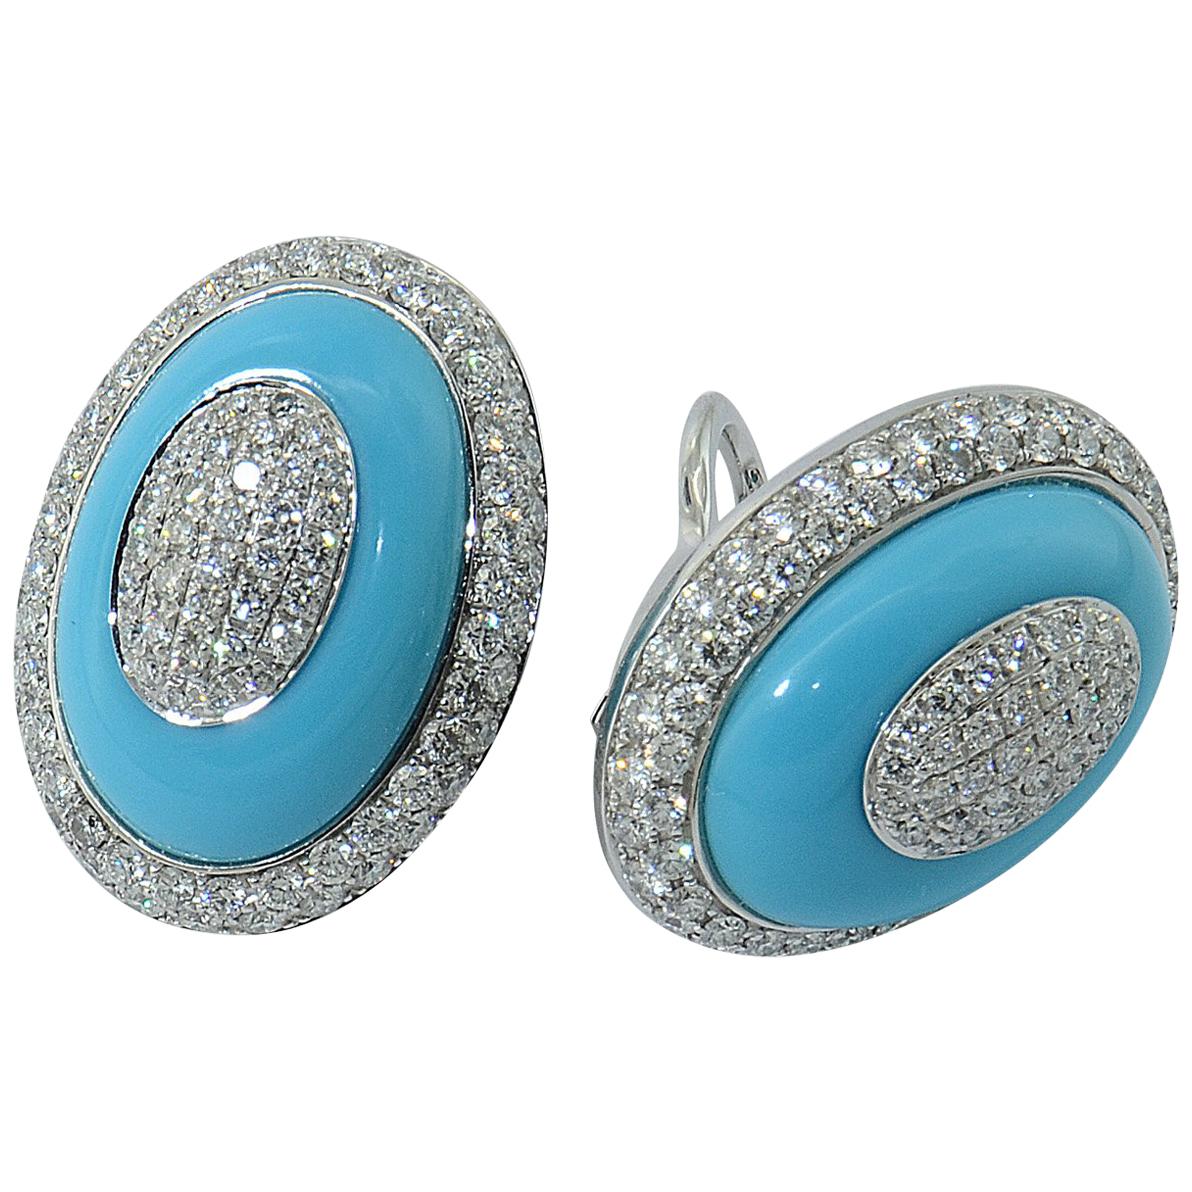 Turquoise Diamant Or blanc 18 carats  Boucles d'oreilles